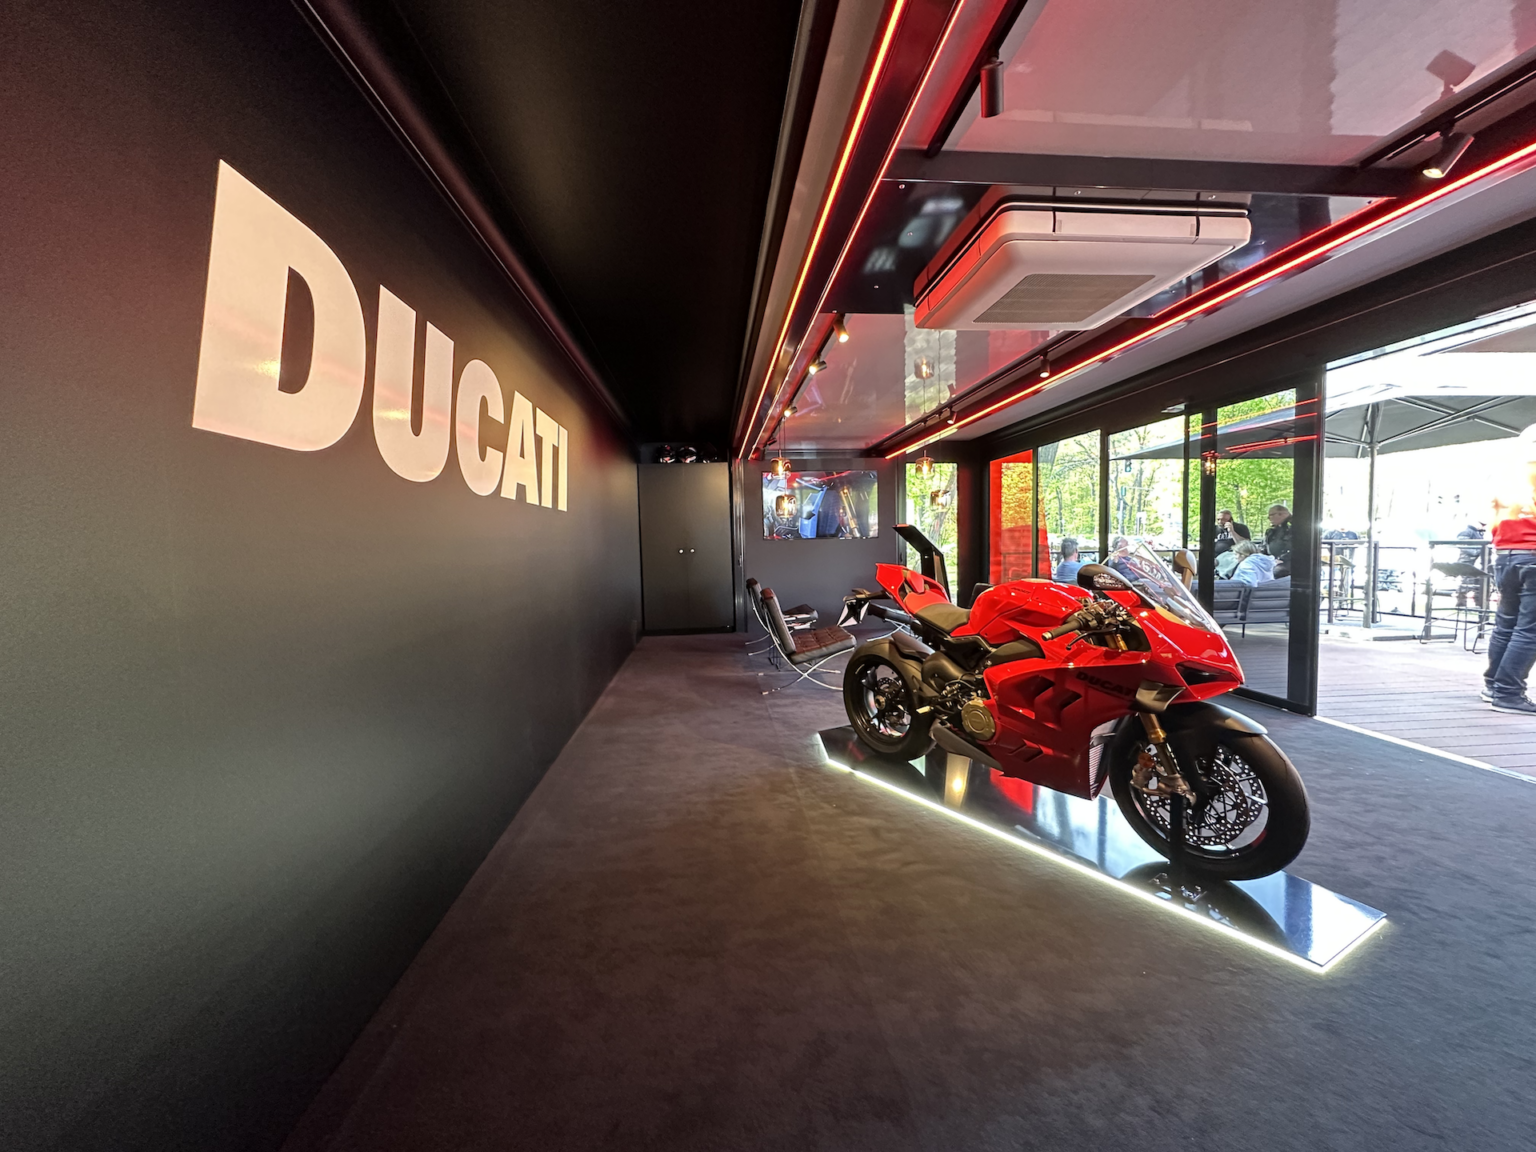 Ducati Berlin Truck an der Spinnerbrücke Innenansicht